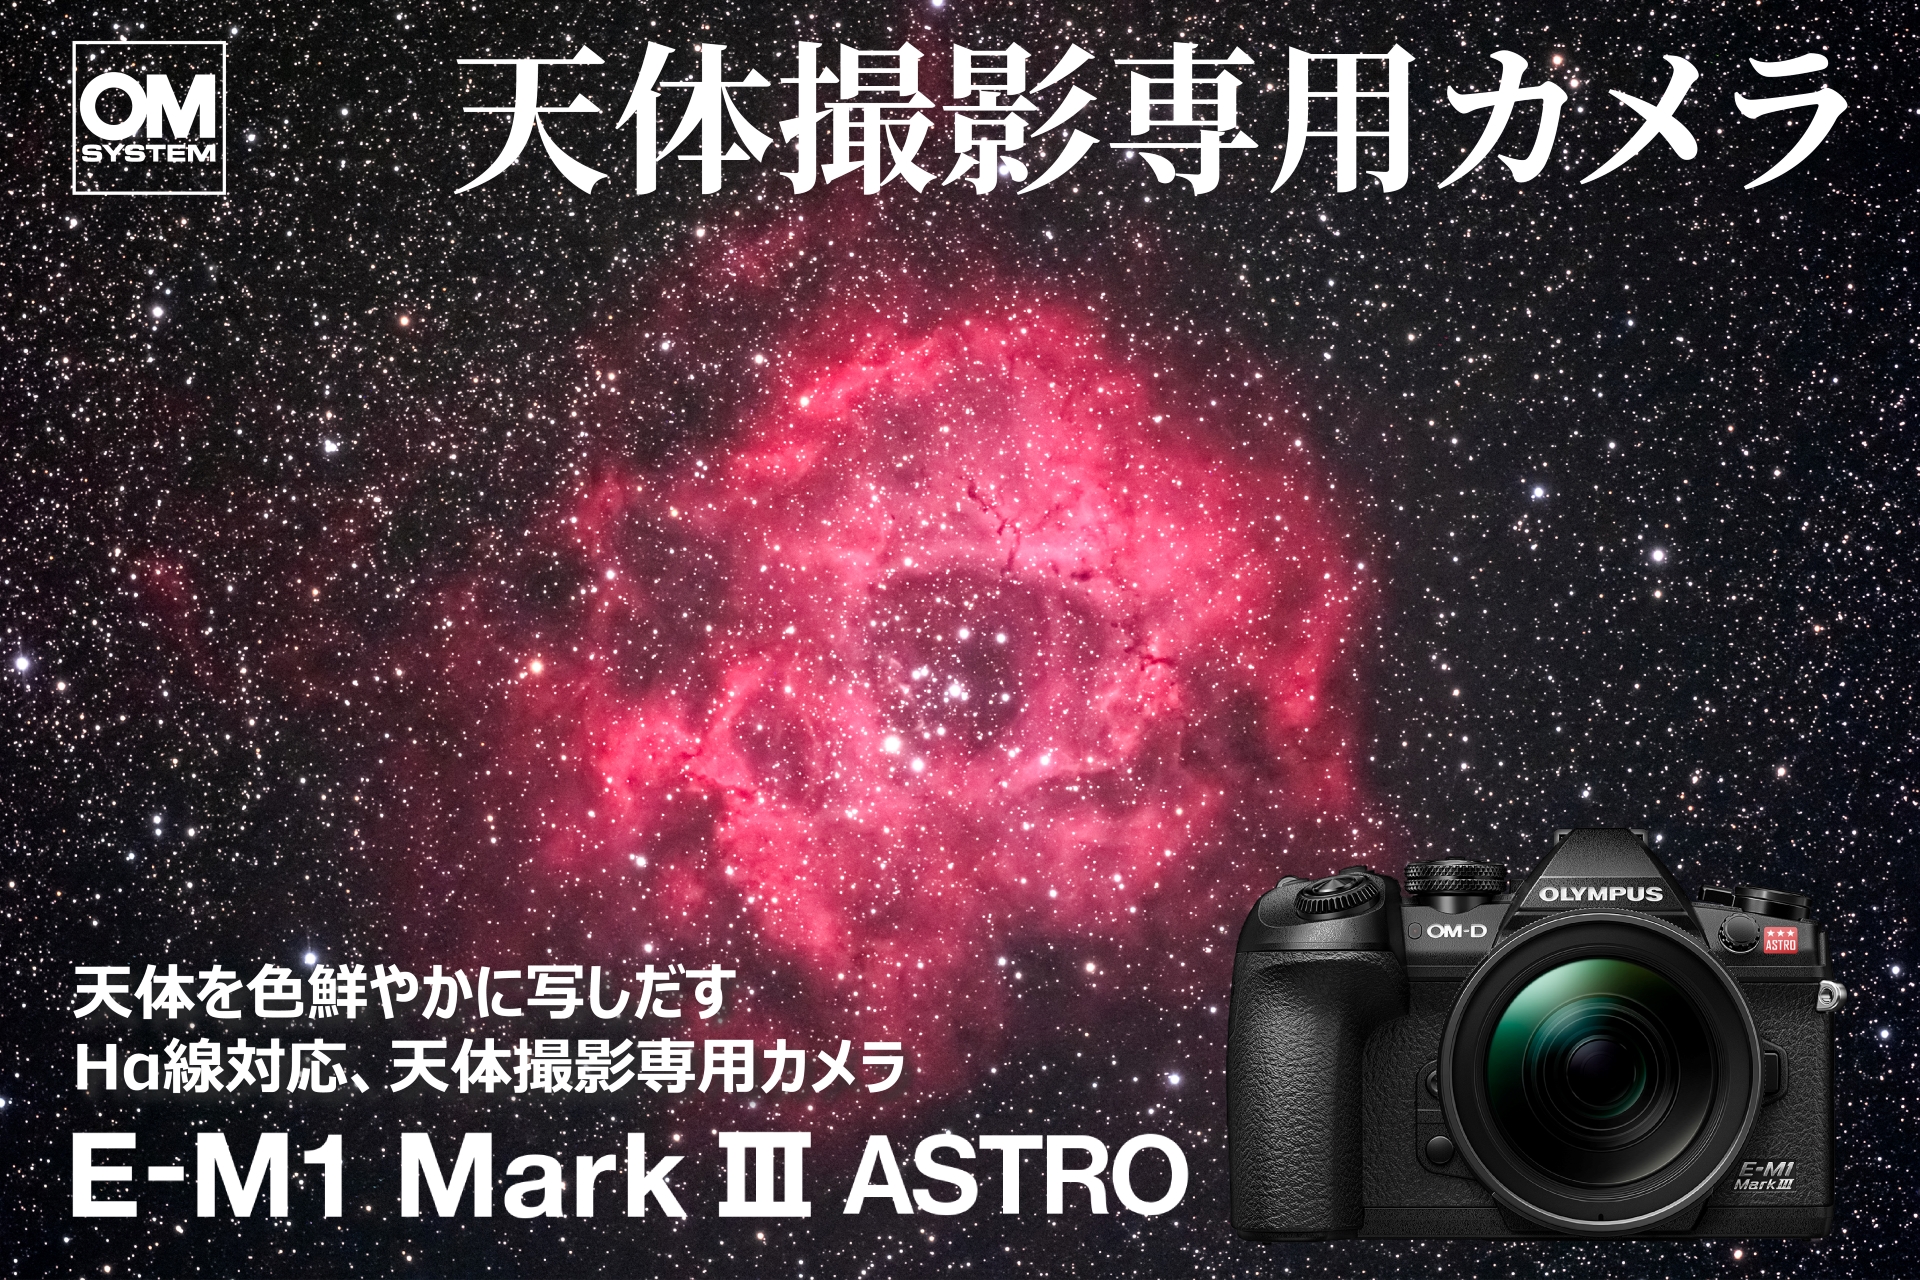 天体撮影専用カメラ「OM SYSTEM E-M1 Mark III ASTRO」および「ボディーマウントフィルター」2種類を発売のサブ画像1